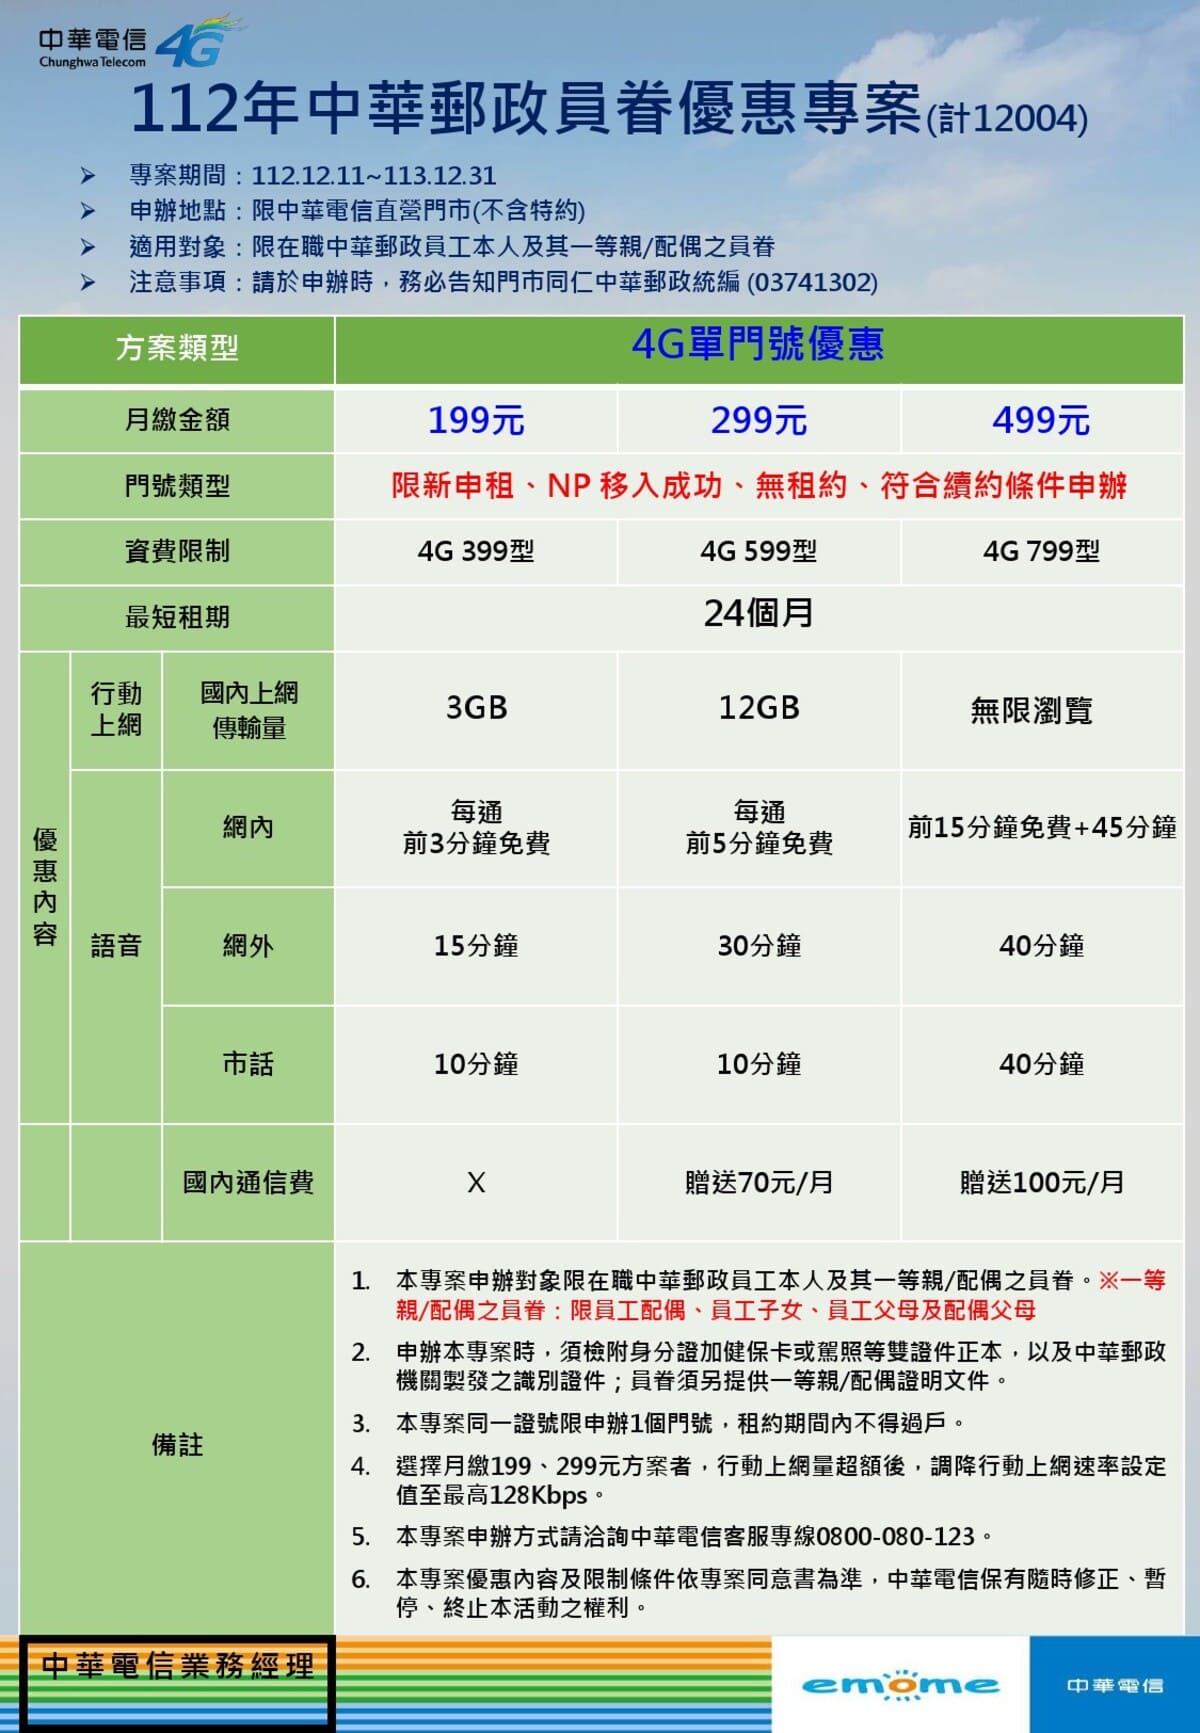 PowerPoint 簡報(中華電11212)-網頁用.jpg